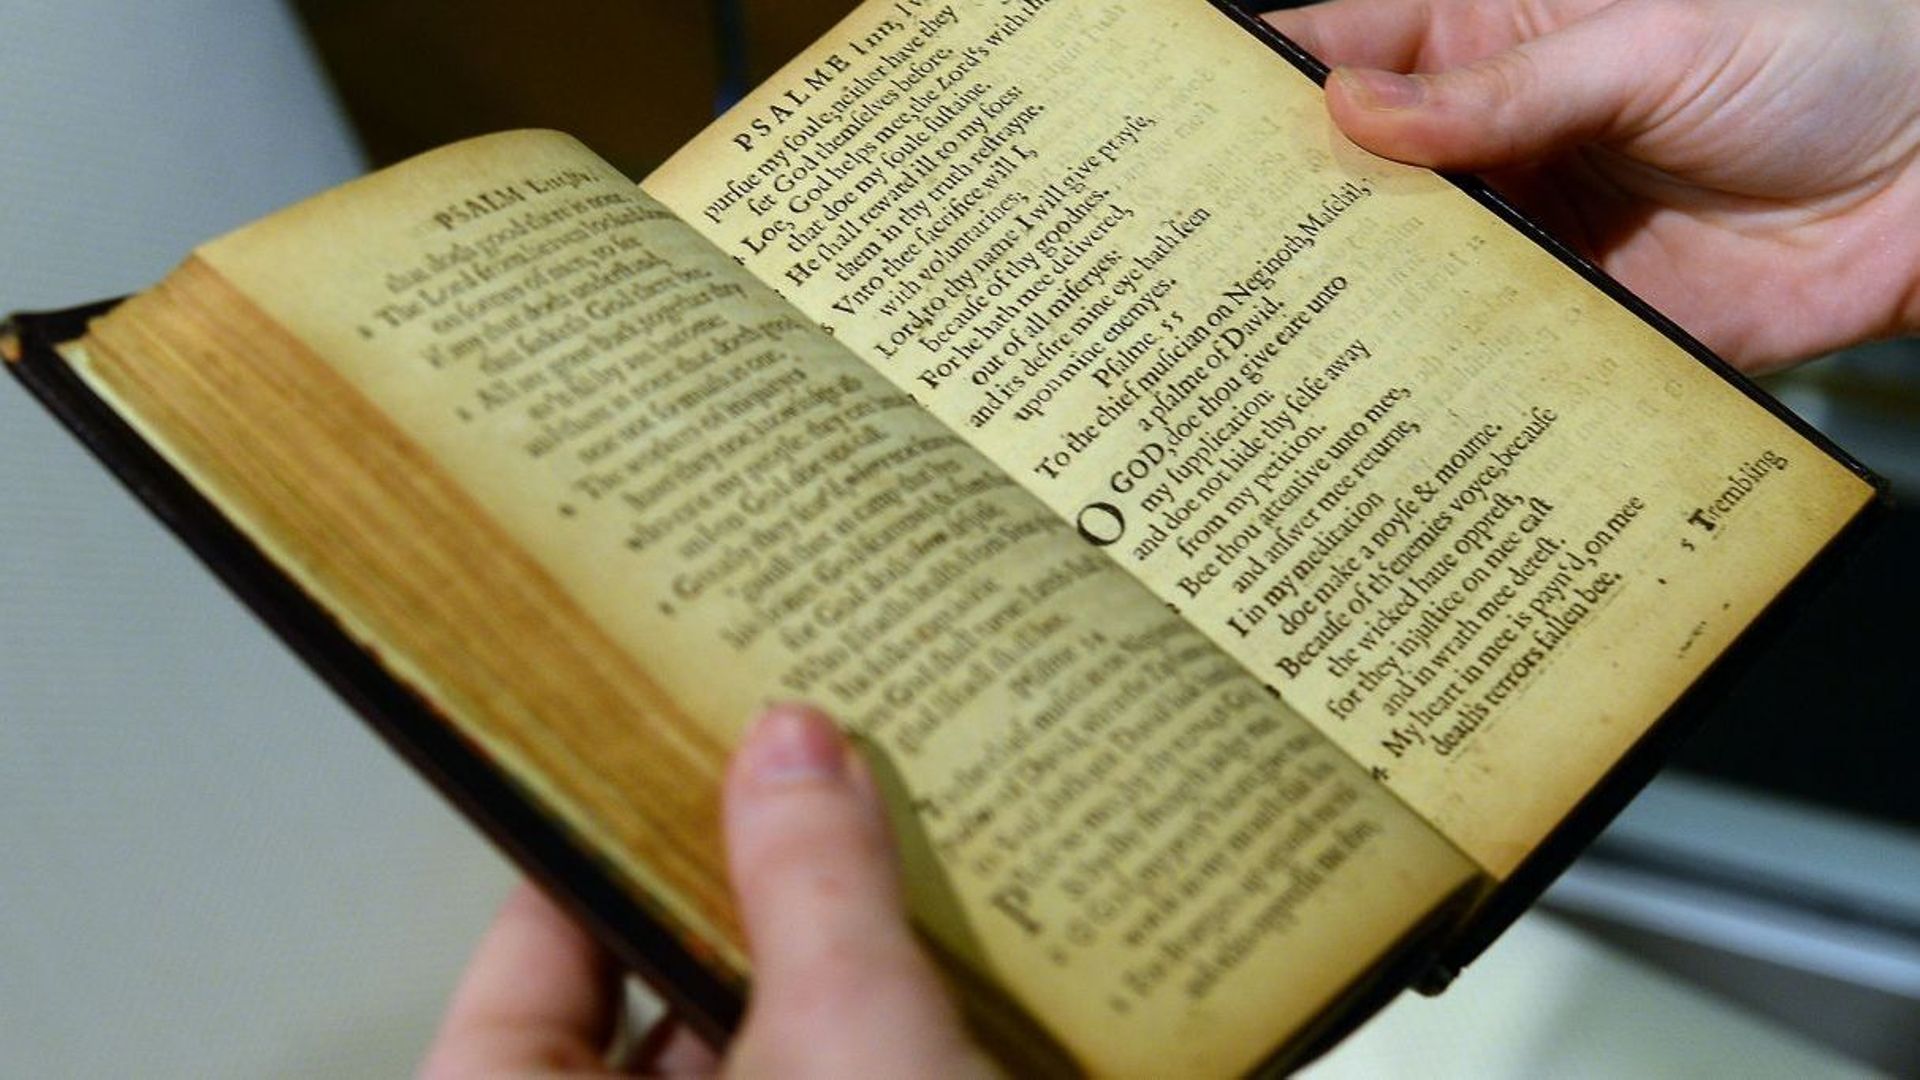 Un employé de Sotheby tient une copie du “Bay Psalm Book”, datant de 1640, le premier livre imprimé sur ce qui allait devenir le territoire américain